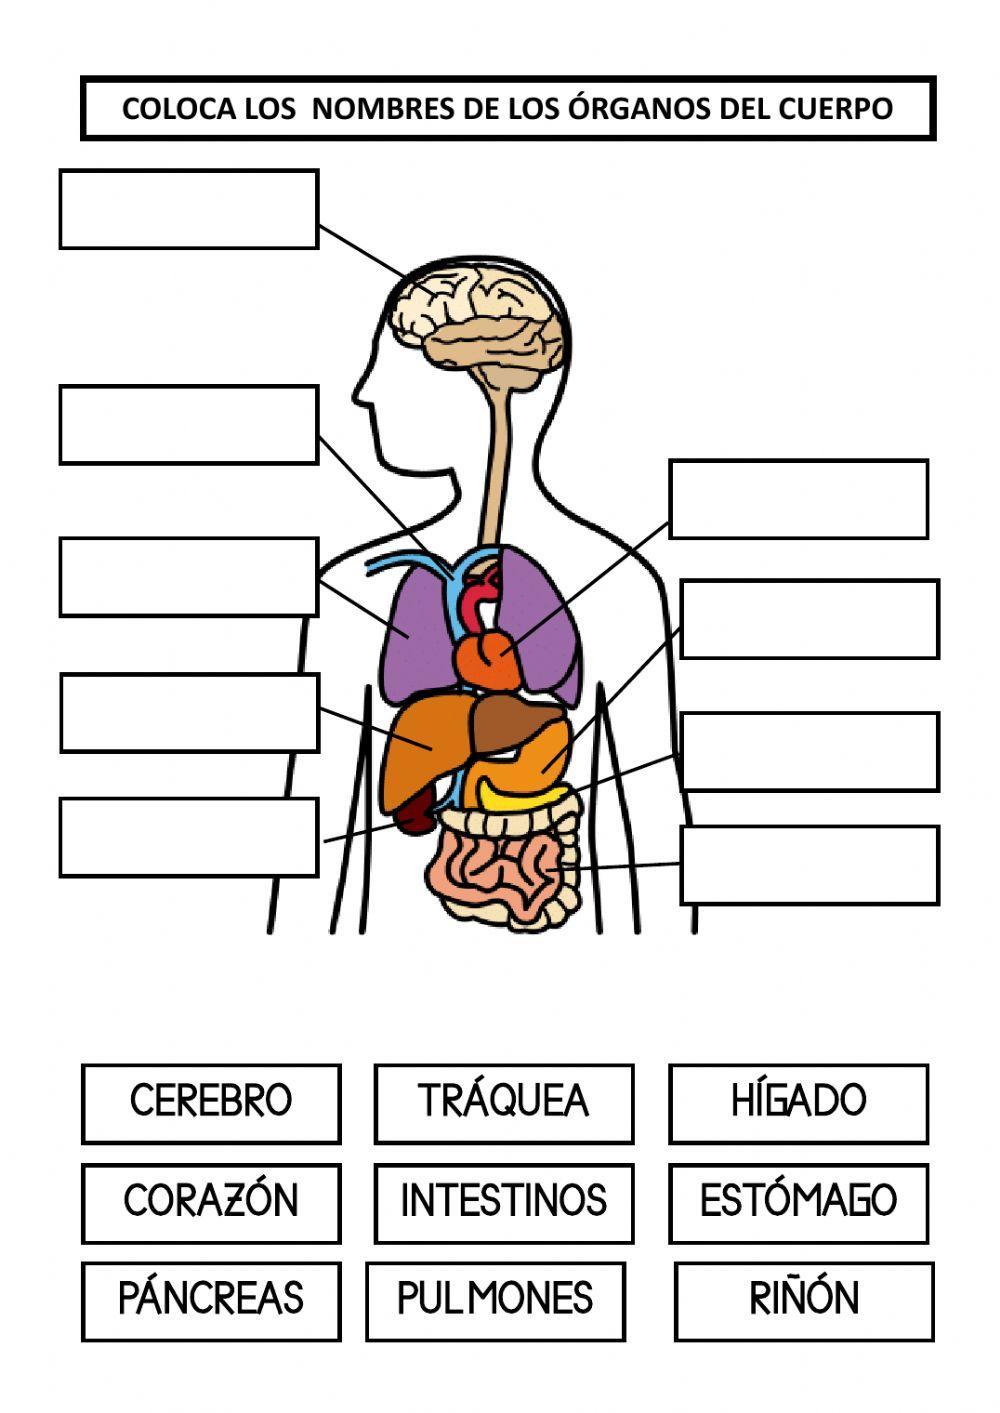 Los órganos del cuerpo